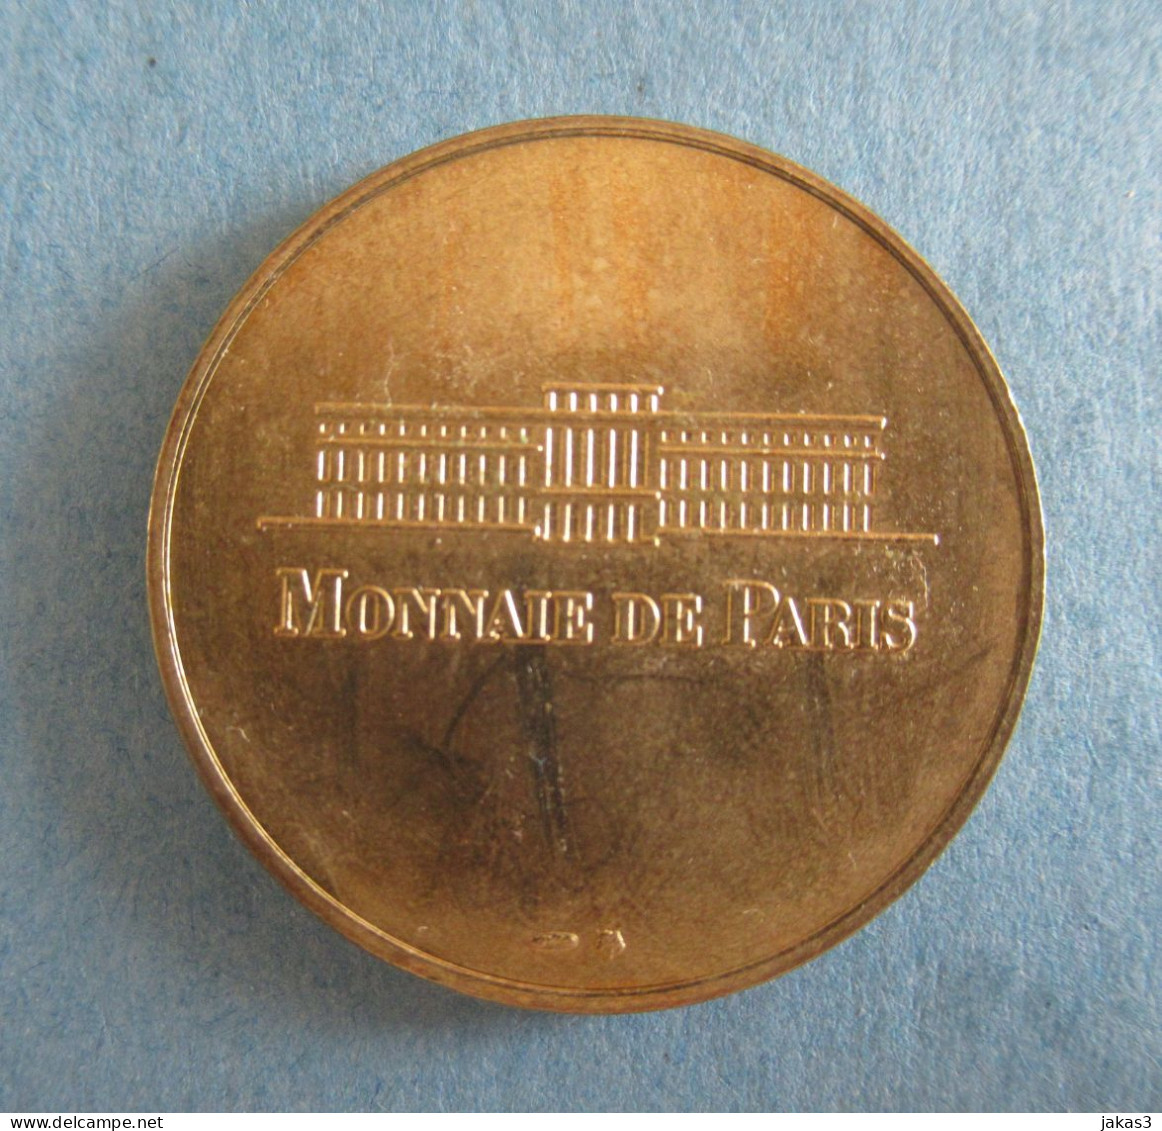 MONNAIE DE PARIS -  MÉDAILLE SOUVENIR -  CHATEAU ROYAL DE BLOIS-  NON DATÉ - ANNÉE  1998 - Zonder Datum